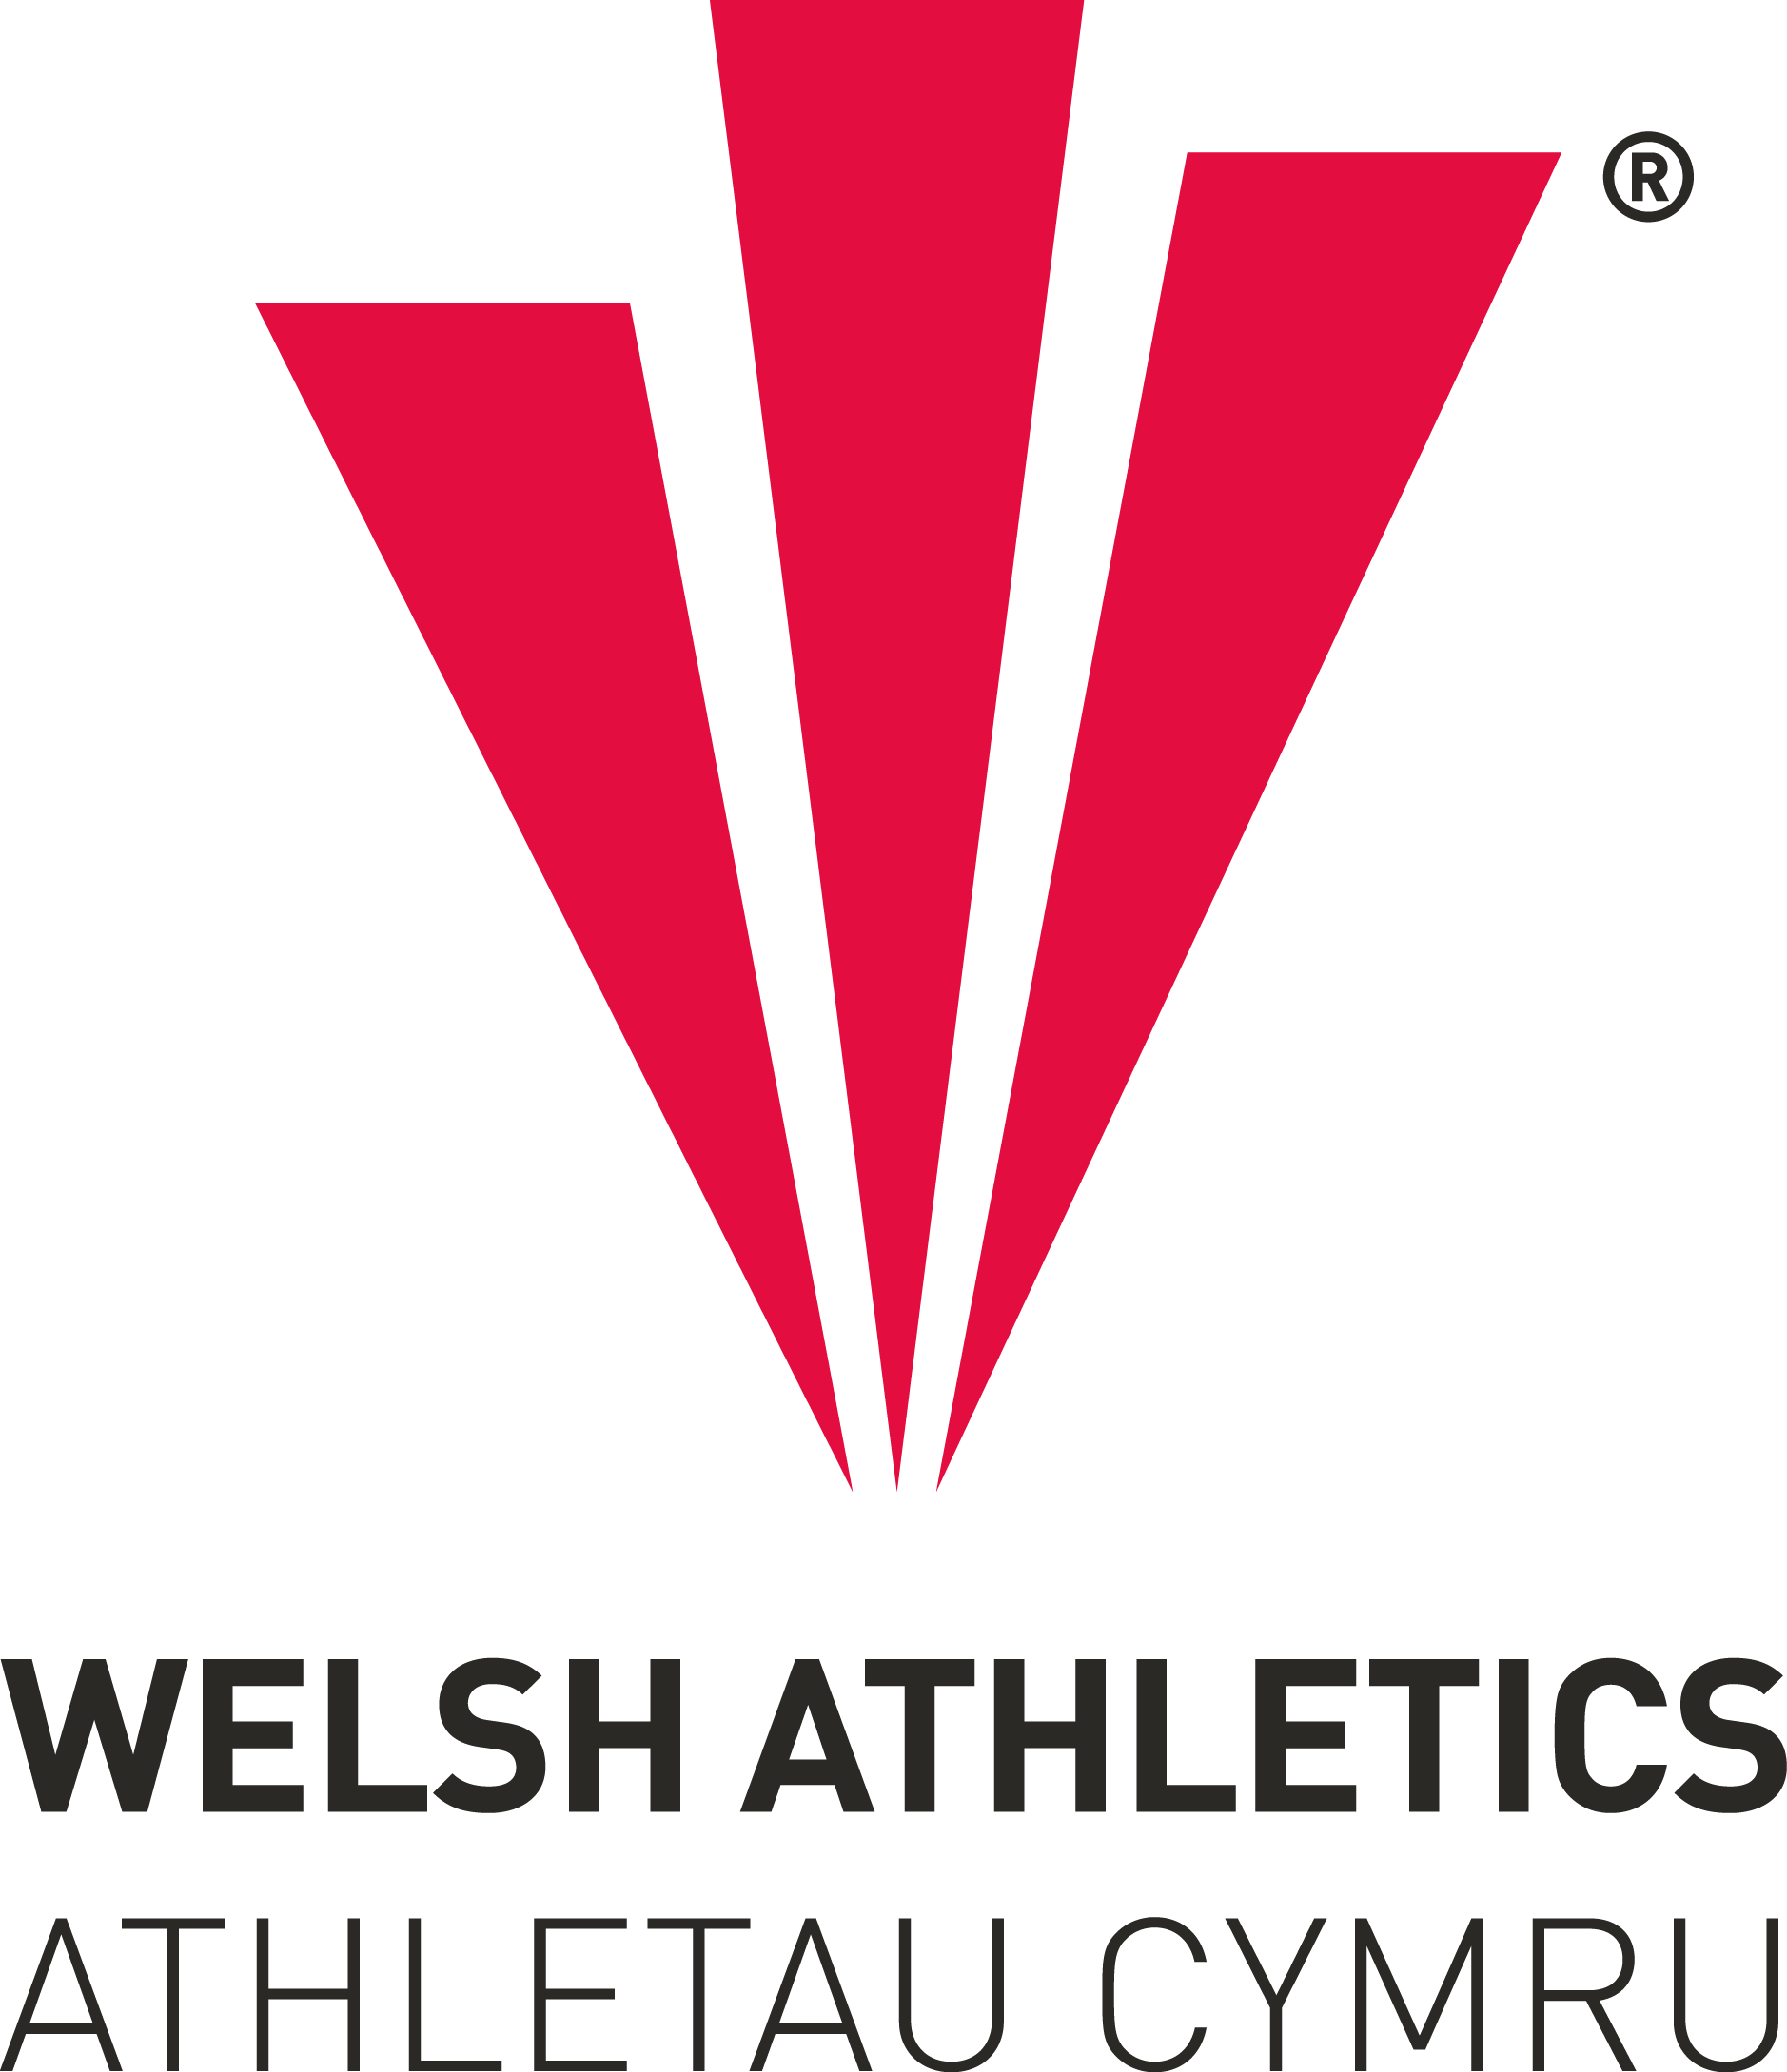 Logo Athletau Cymru.png